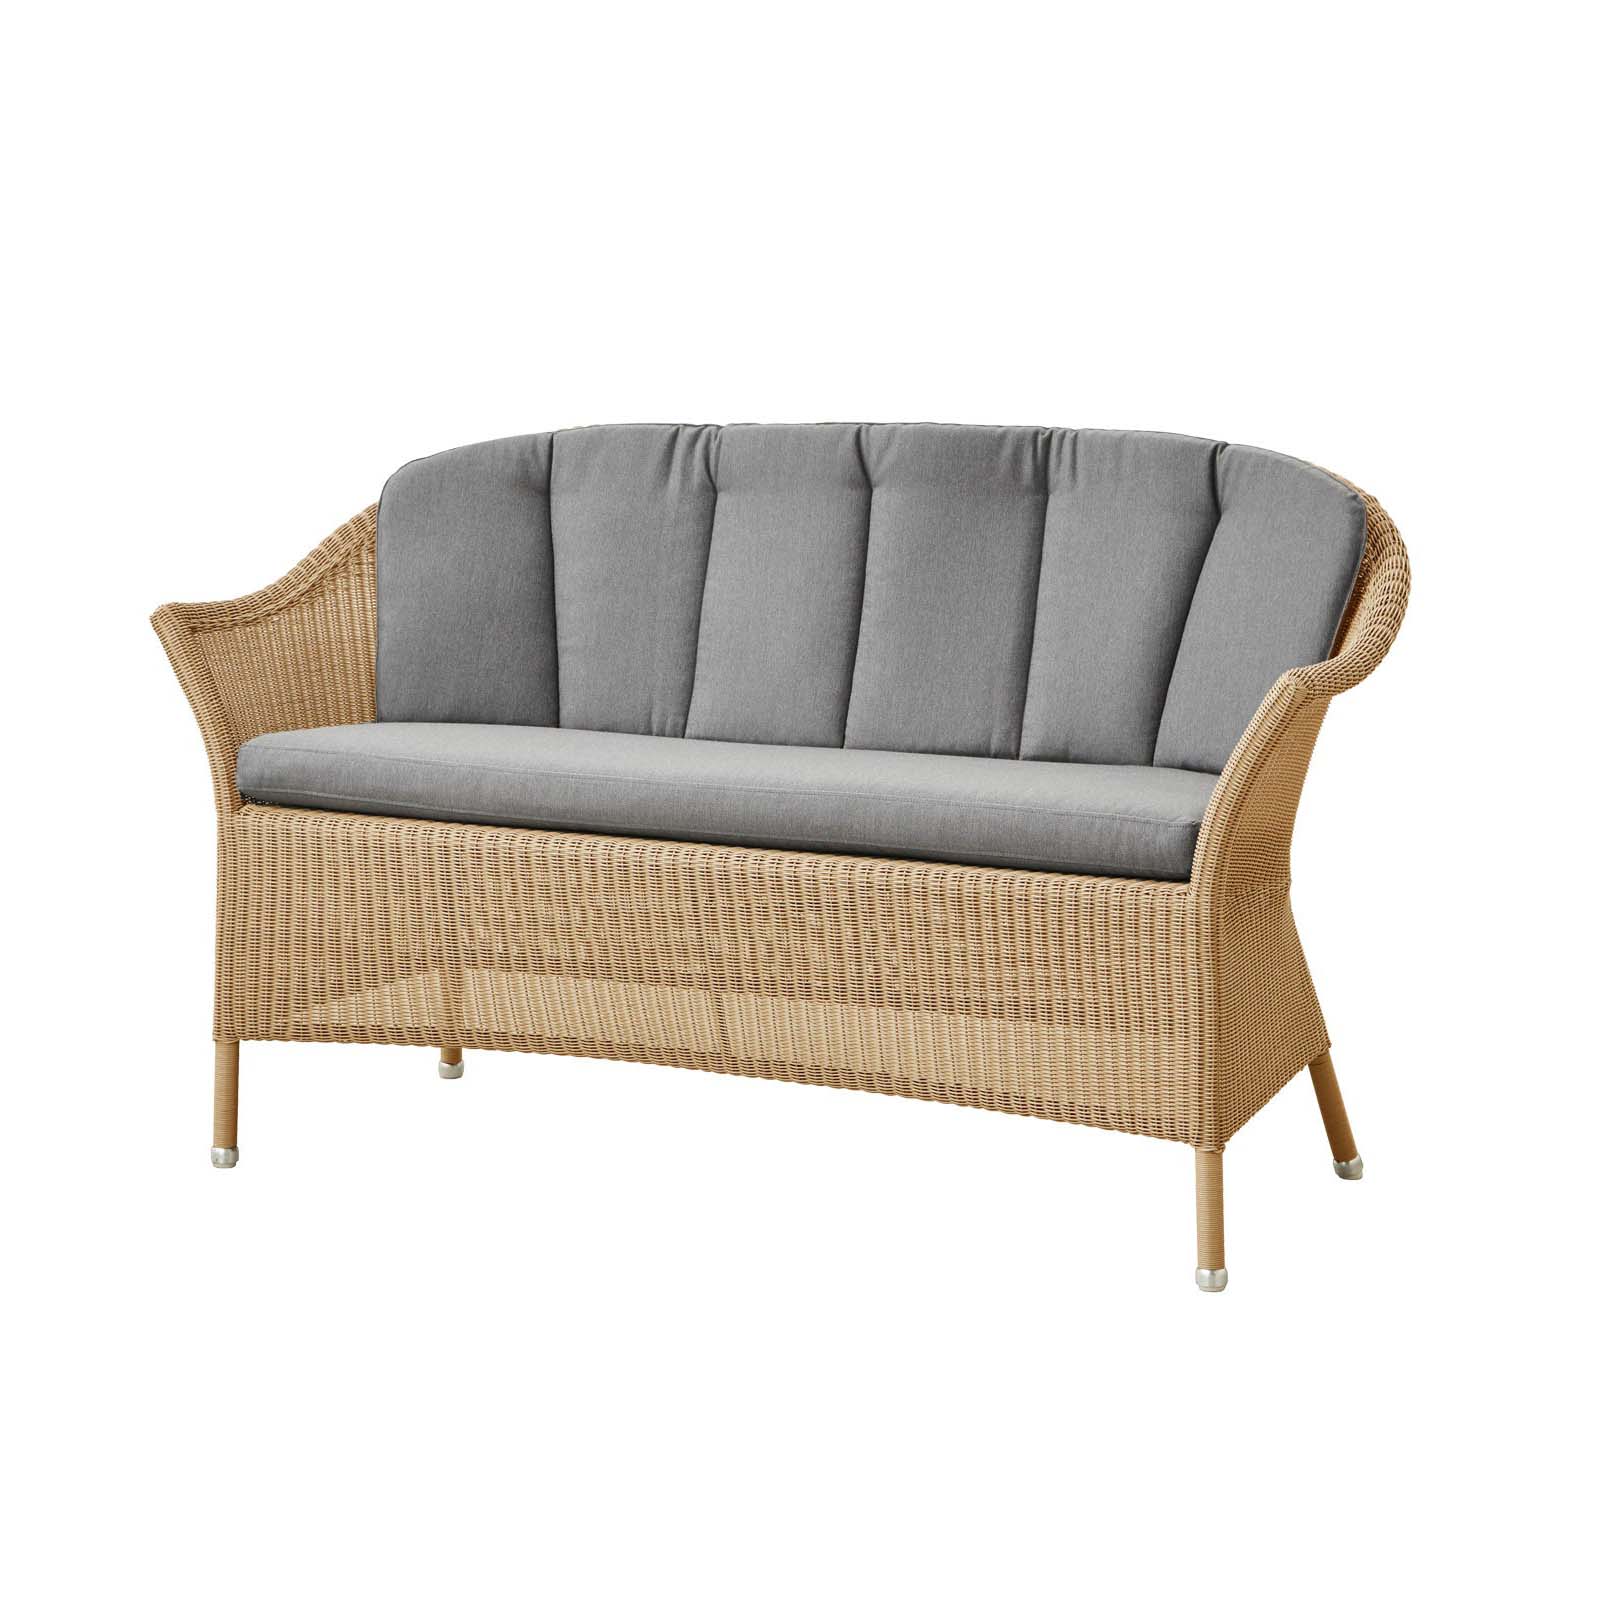 Lansing 2-Sitzer Sofa aus Cane-line Weave in Taupe mit Kissen aus Cane-line Natté in White